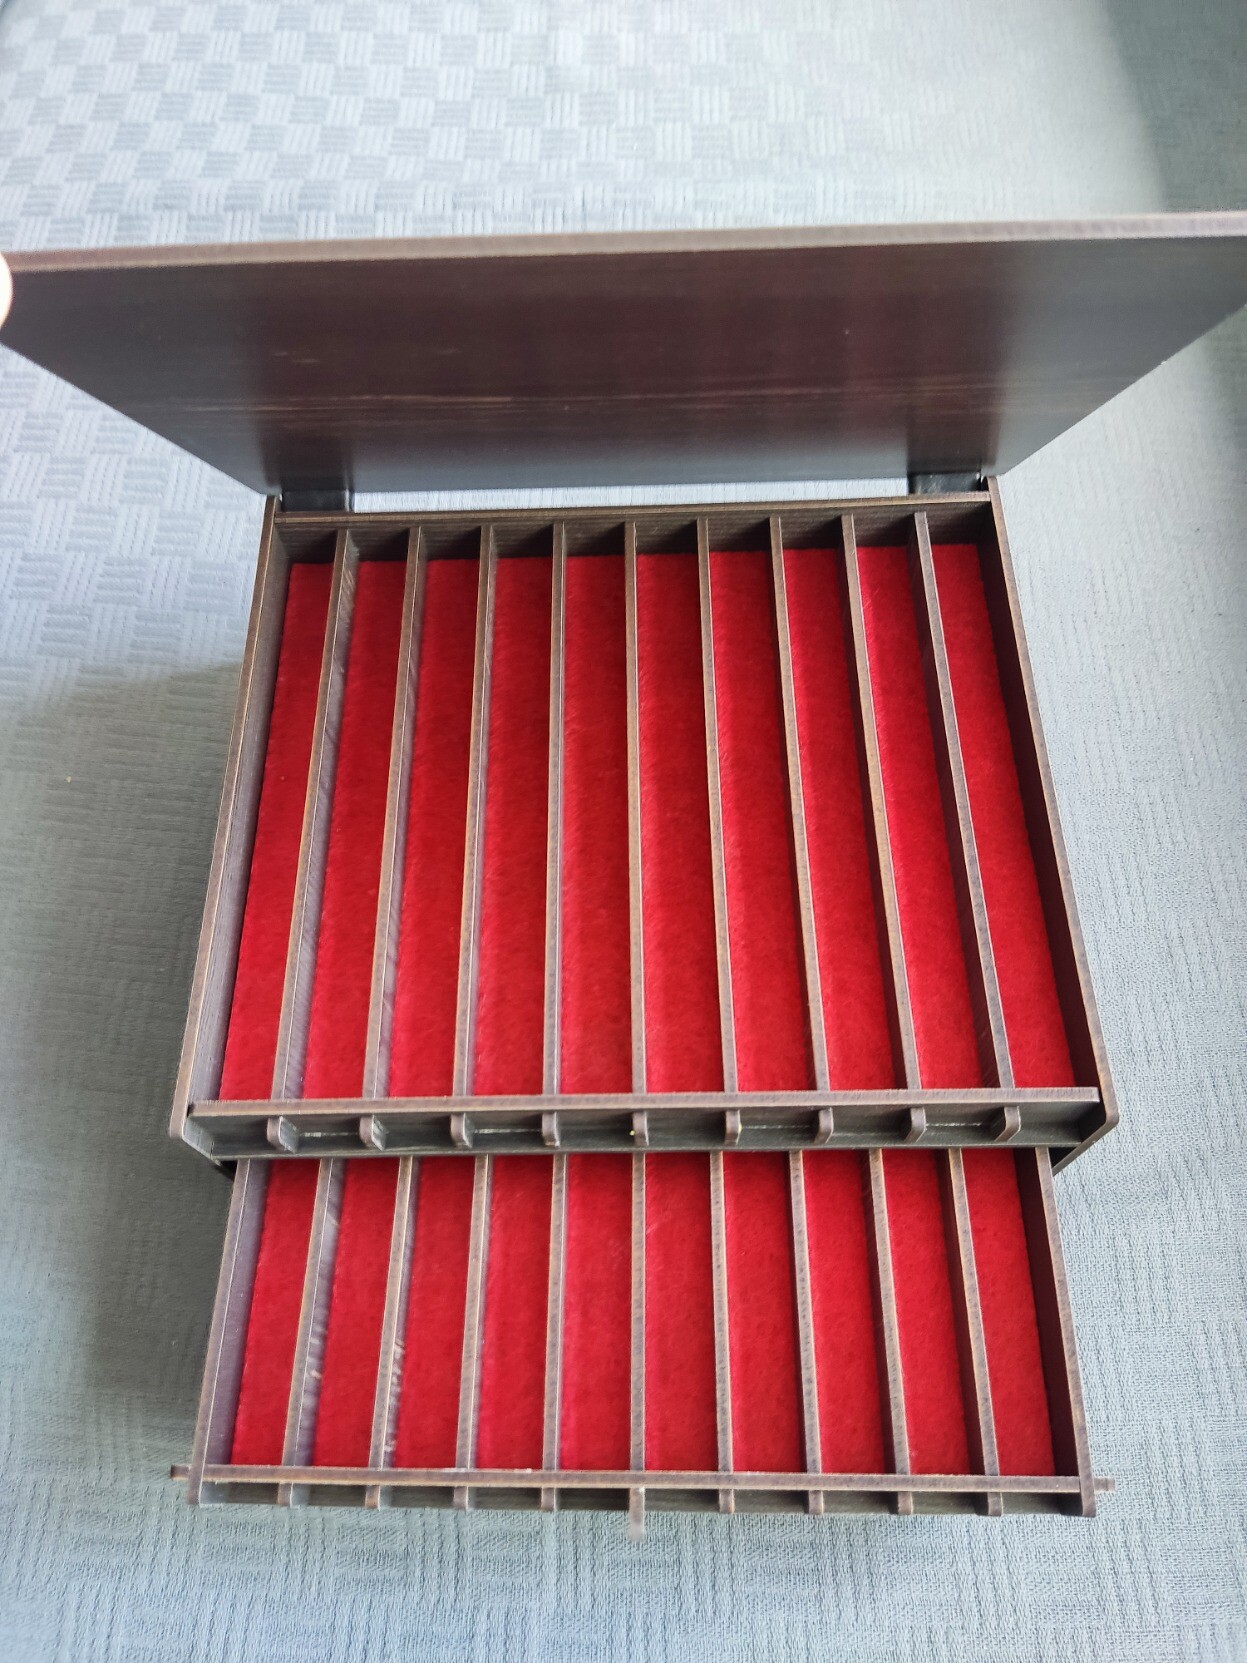 La caja anterior abierta, en la que se ven 2 bandejas con 10 huecos cada una y con el fondo de fieltro rojo